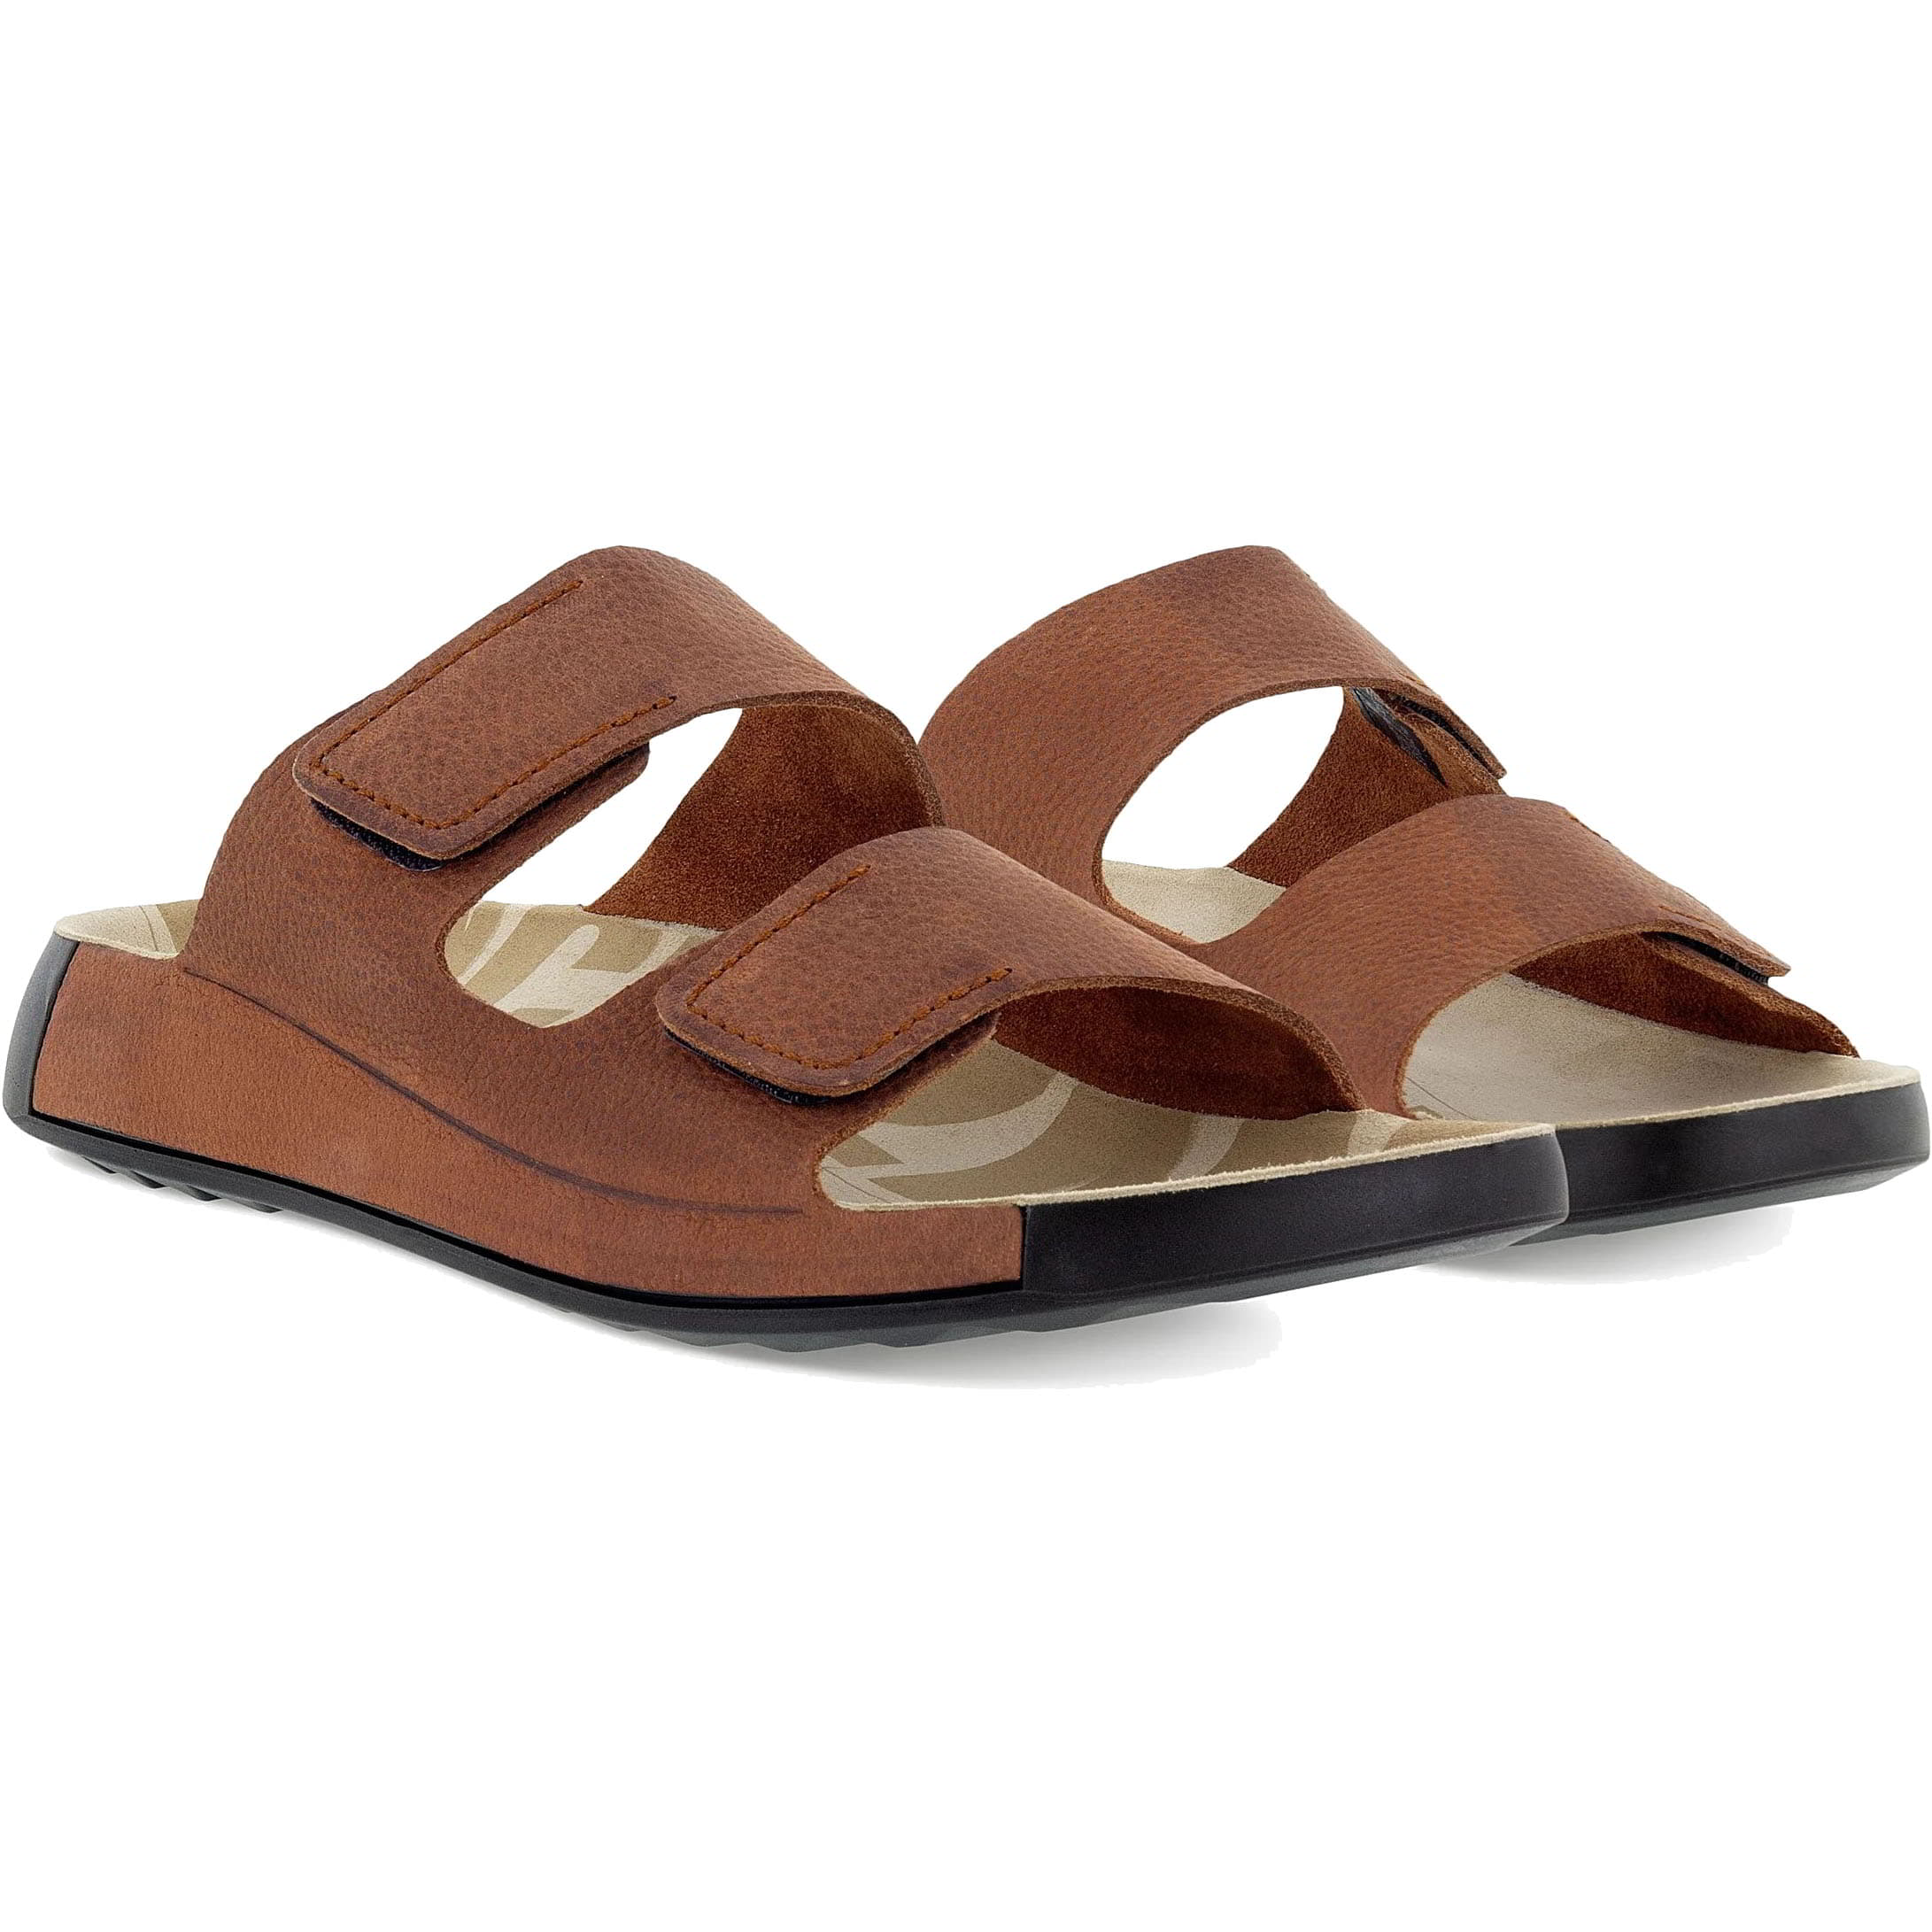 Ecco Shoes Mens 2nd Cozmo Adjustable Slide Sandals - UK 10.5/11 / EU 45 Brown 2951